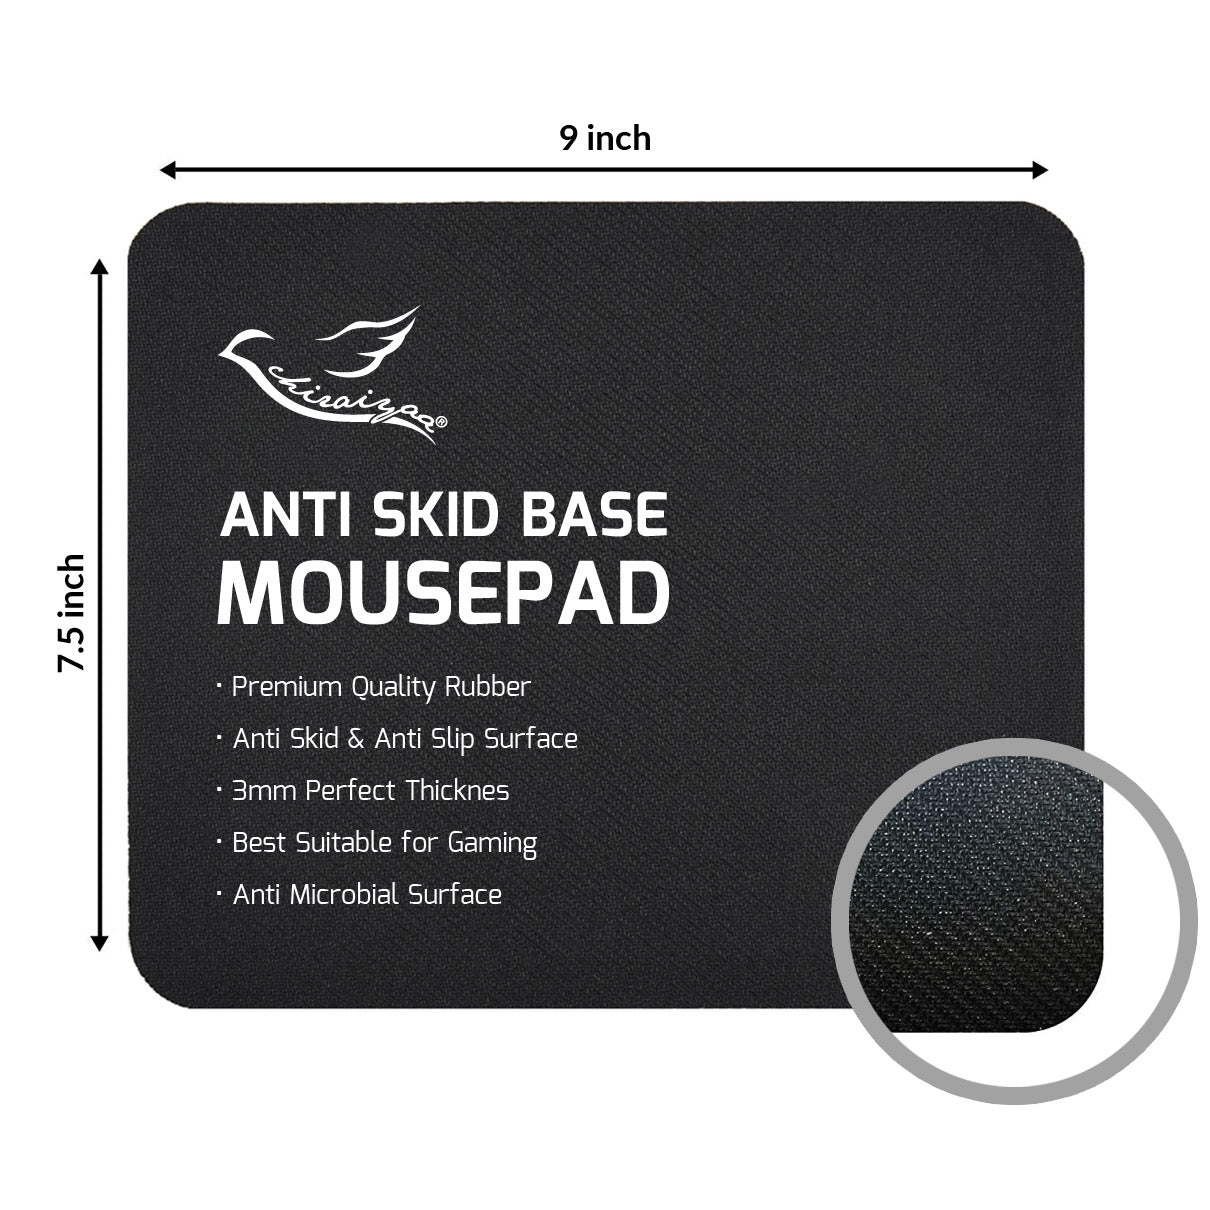 Space Astronaut Designer Printed Premium Mouse pad (9 in x 7.5 in)